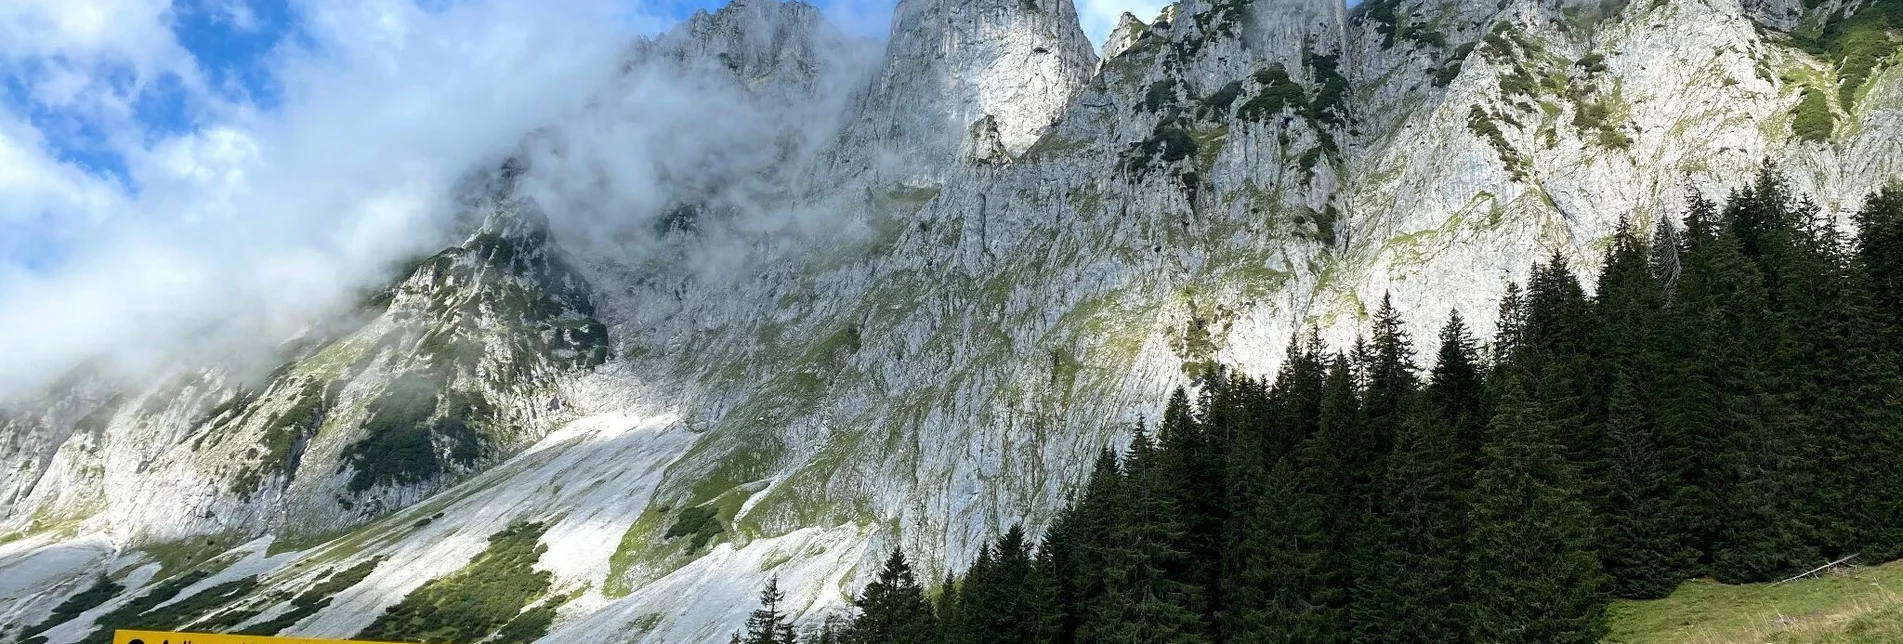 Klettersteig Wildfrauensteig - Bosruck Nordostgrad - Touren-Impression #1 | © TV Gesäuse